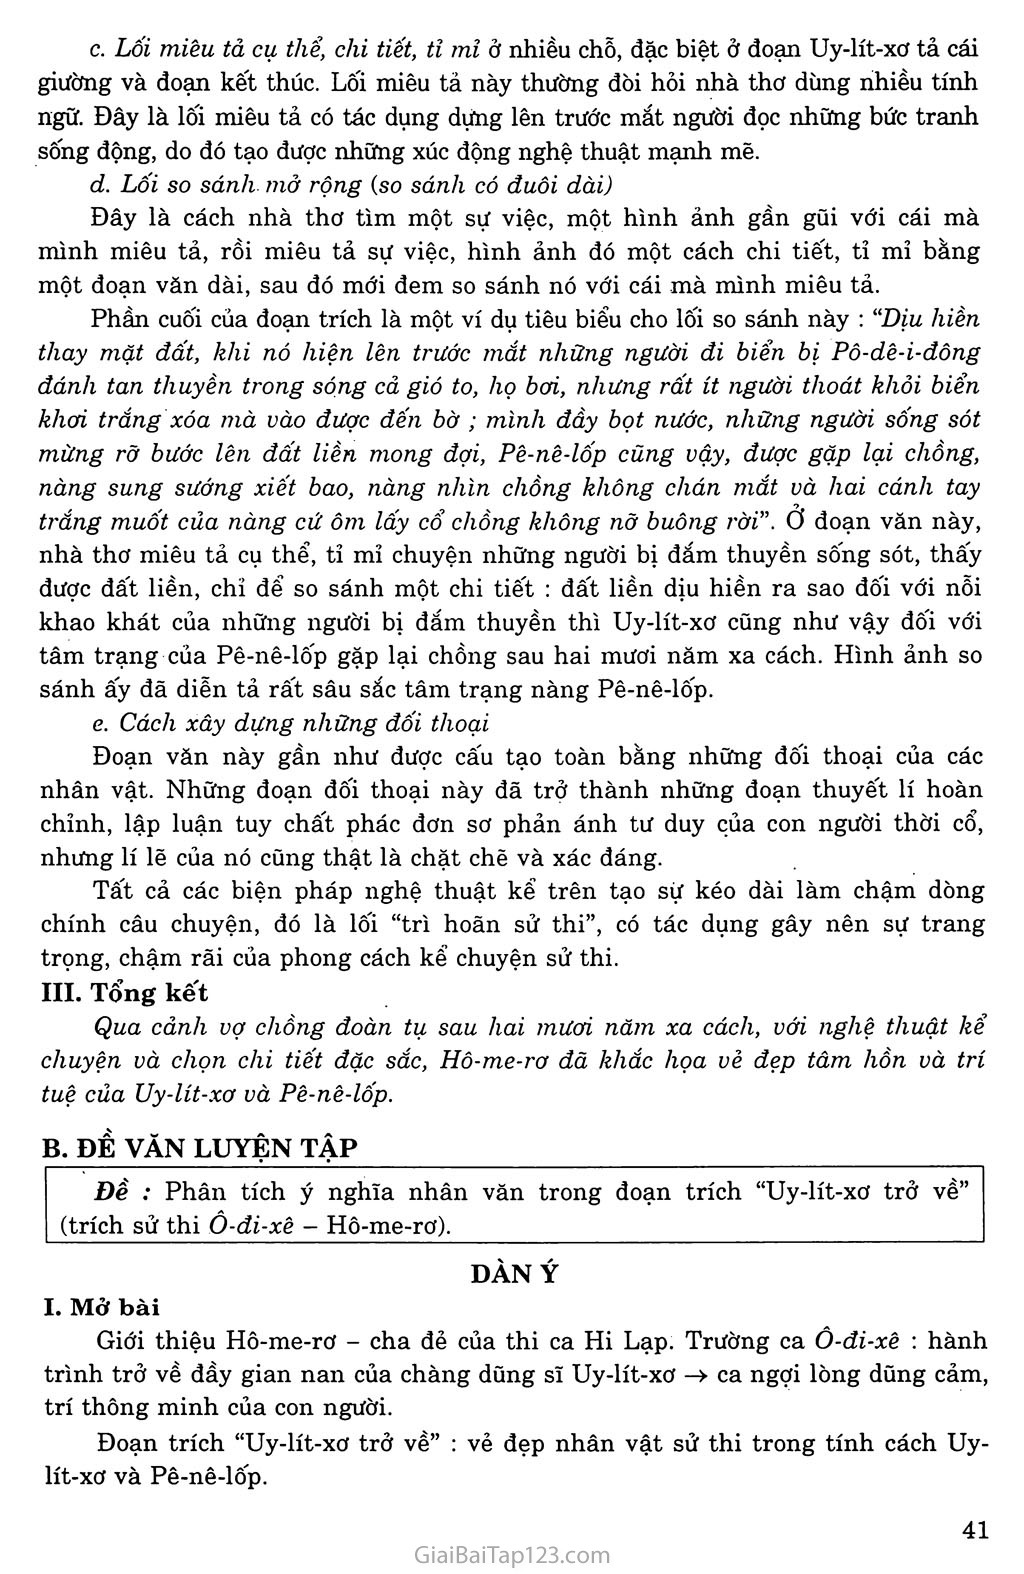 Uy - lít - xơ trở về (trích Ô - đi - xê - sử thi Hi Lạp) trang 5